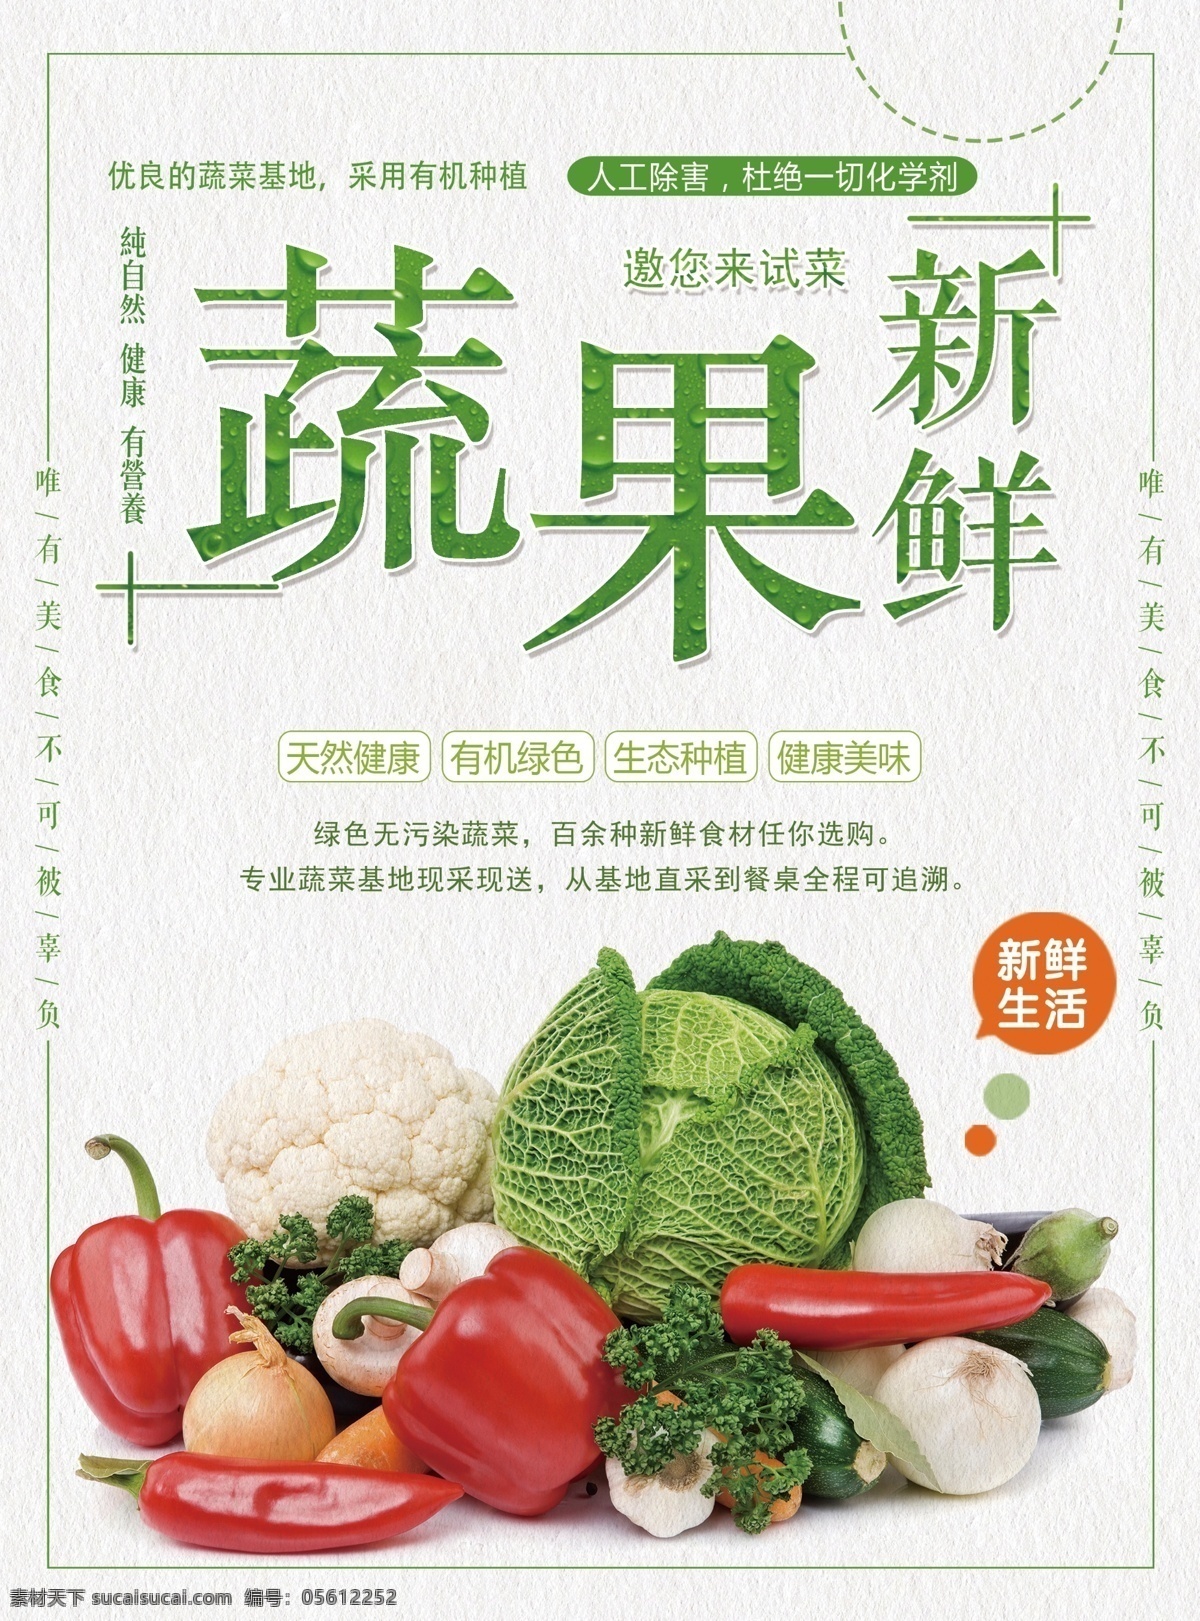 新鲜 蔬果 推广 宣传 dm 单 新鲜果蔬 水果蔬菜 dm单 蔬菜海报 试吃 宣传单